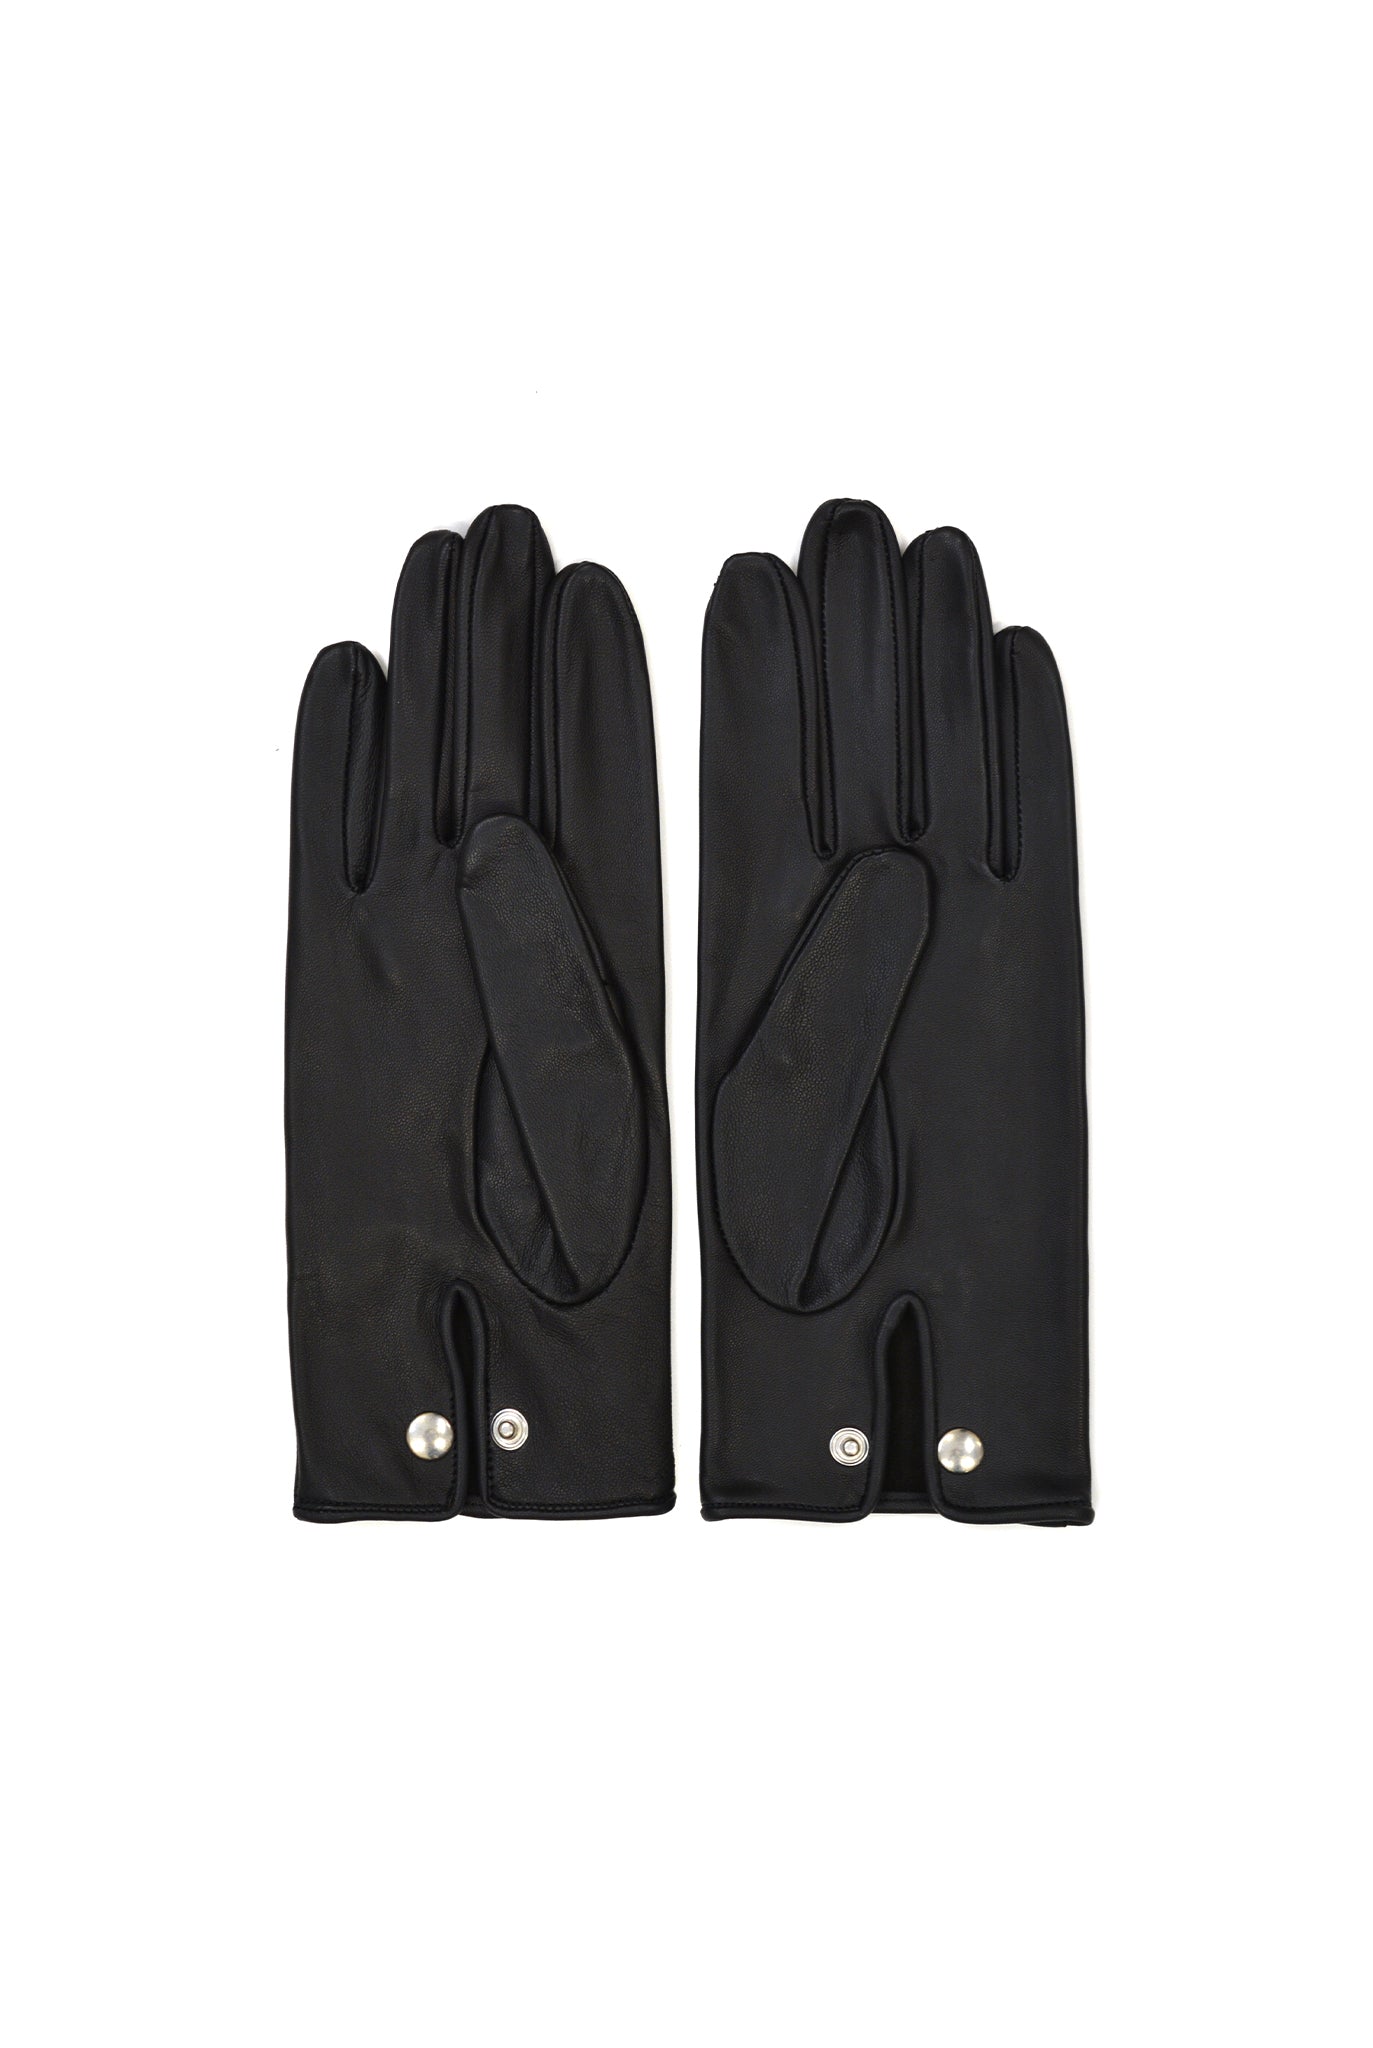 Ernest W. Baker Leather Gloves, Black